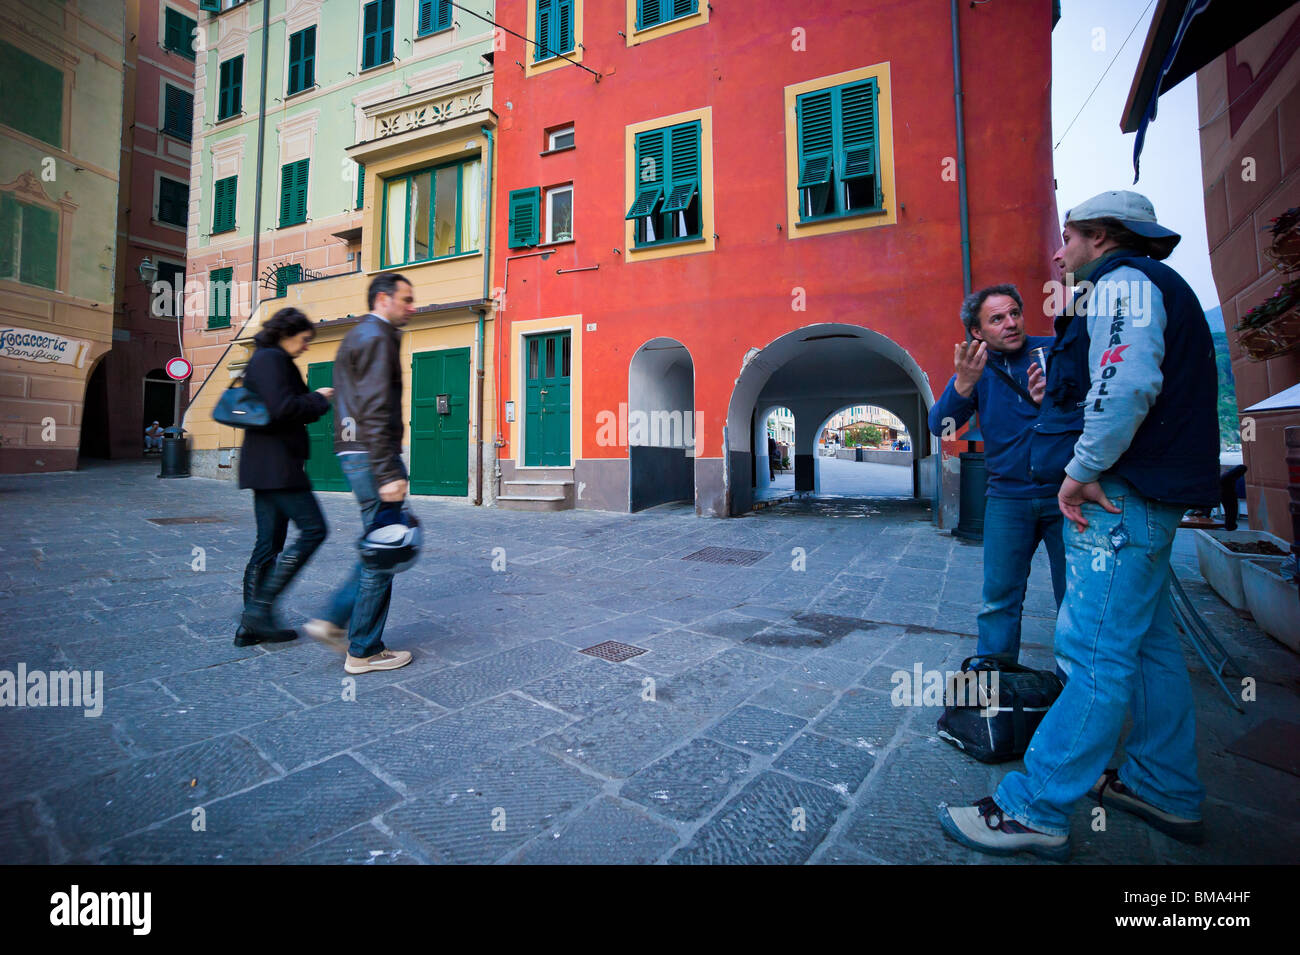 Camogli, Italy: Streetscene Stock Photo